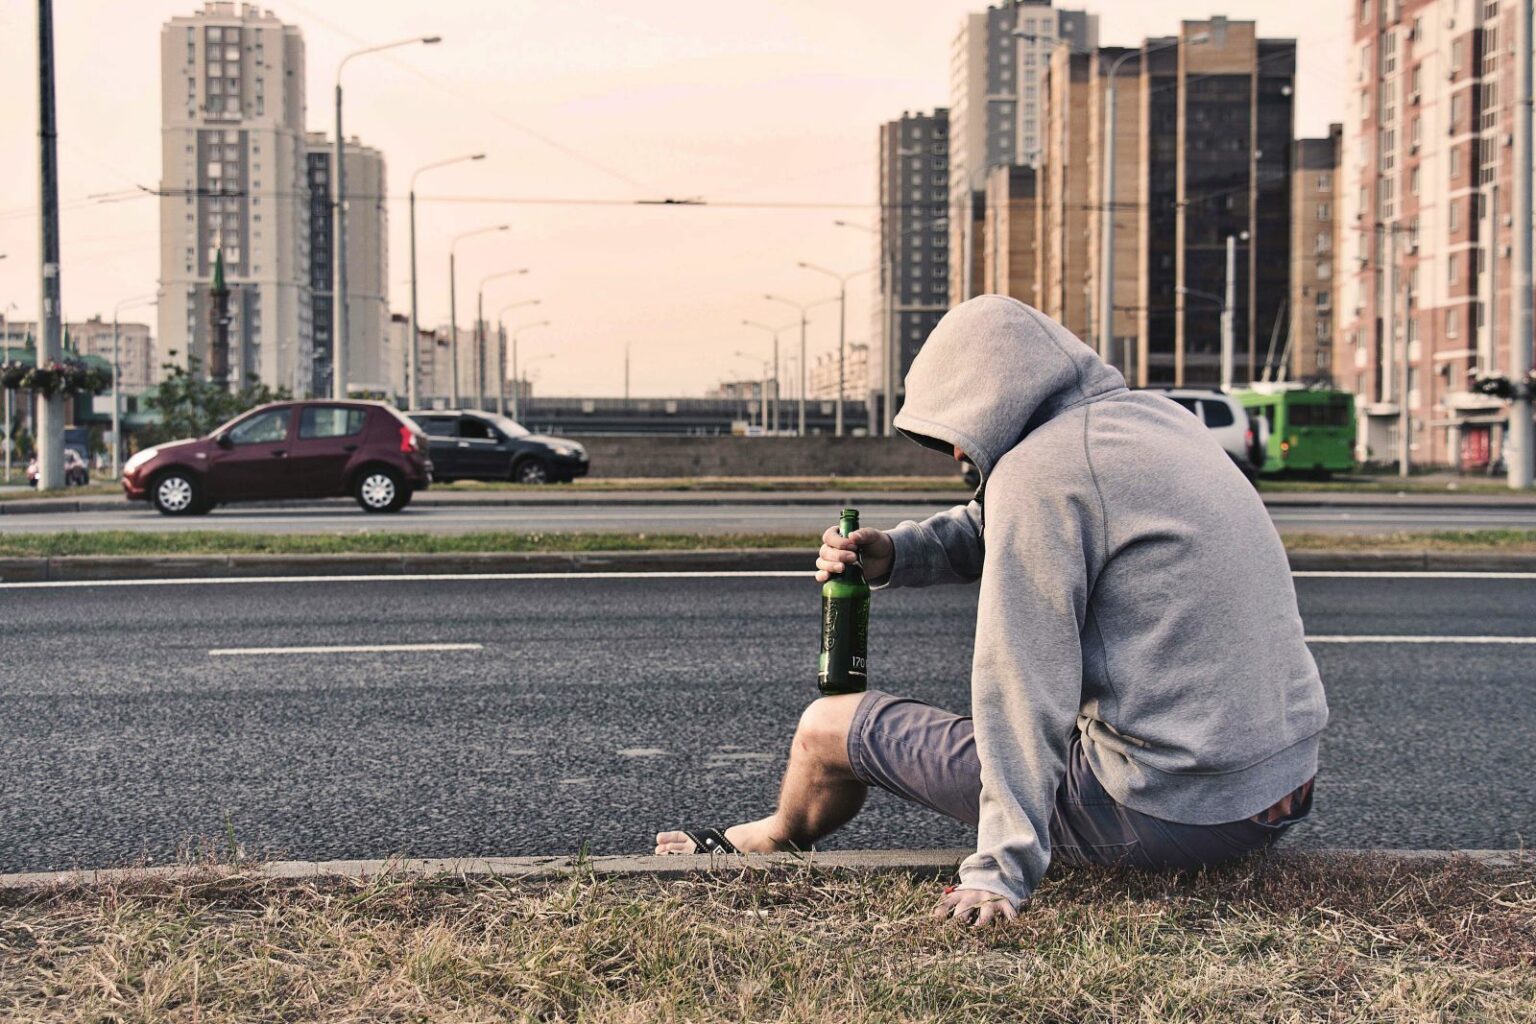 알콜 의존증, 남성이 술병을 들고 차도 옆에 앉아있는 이미지